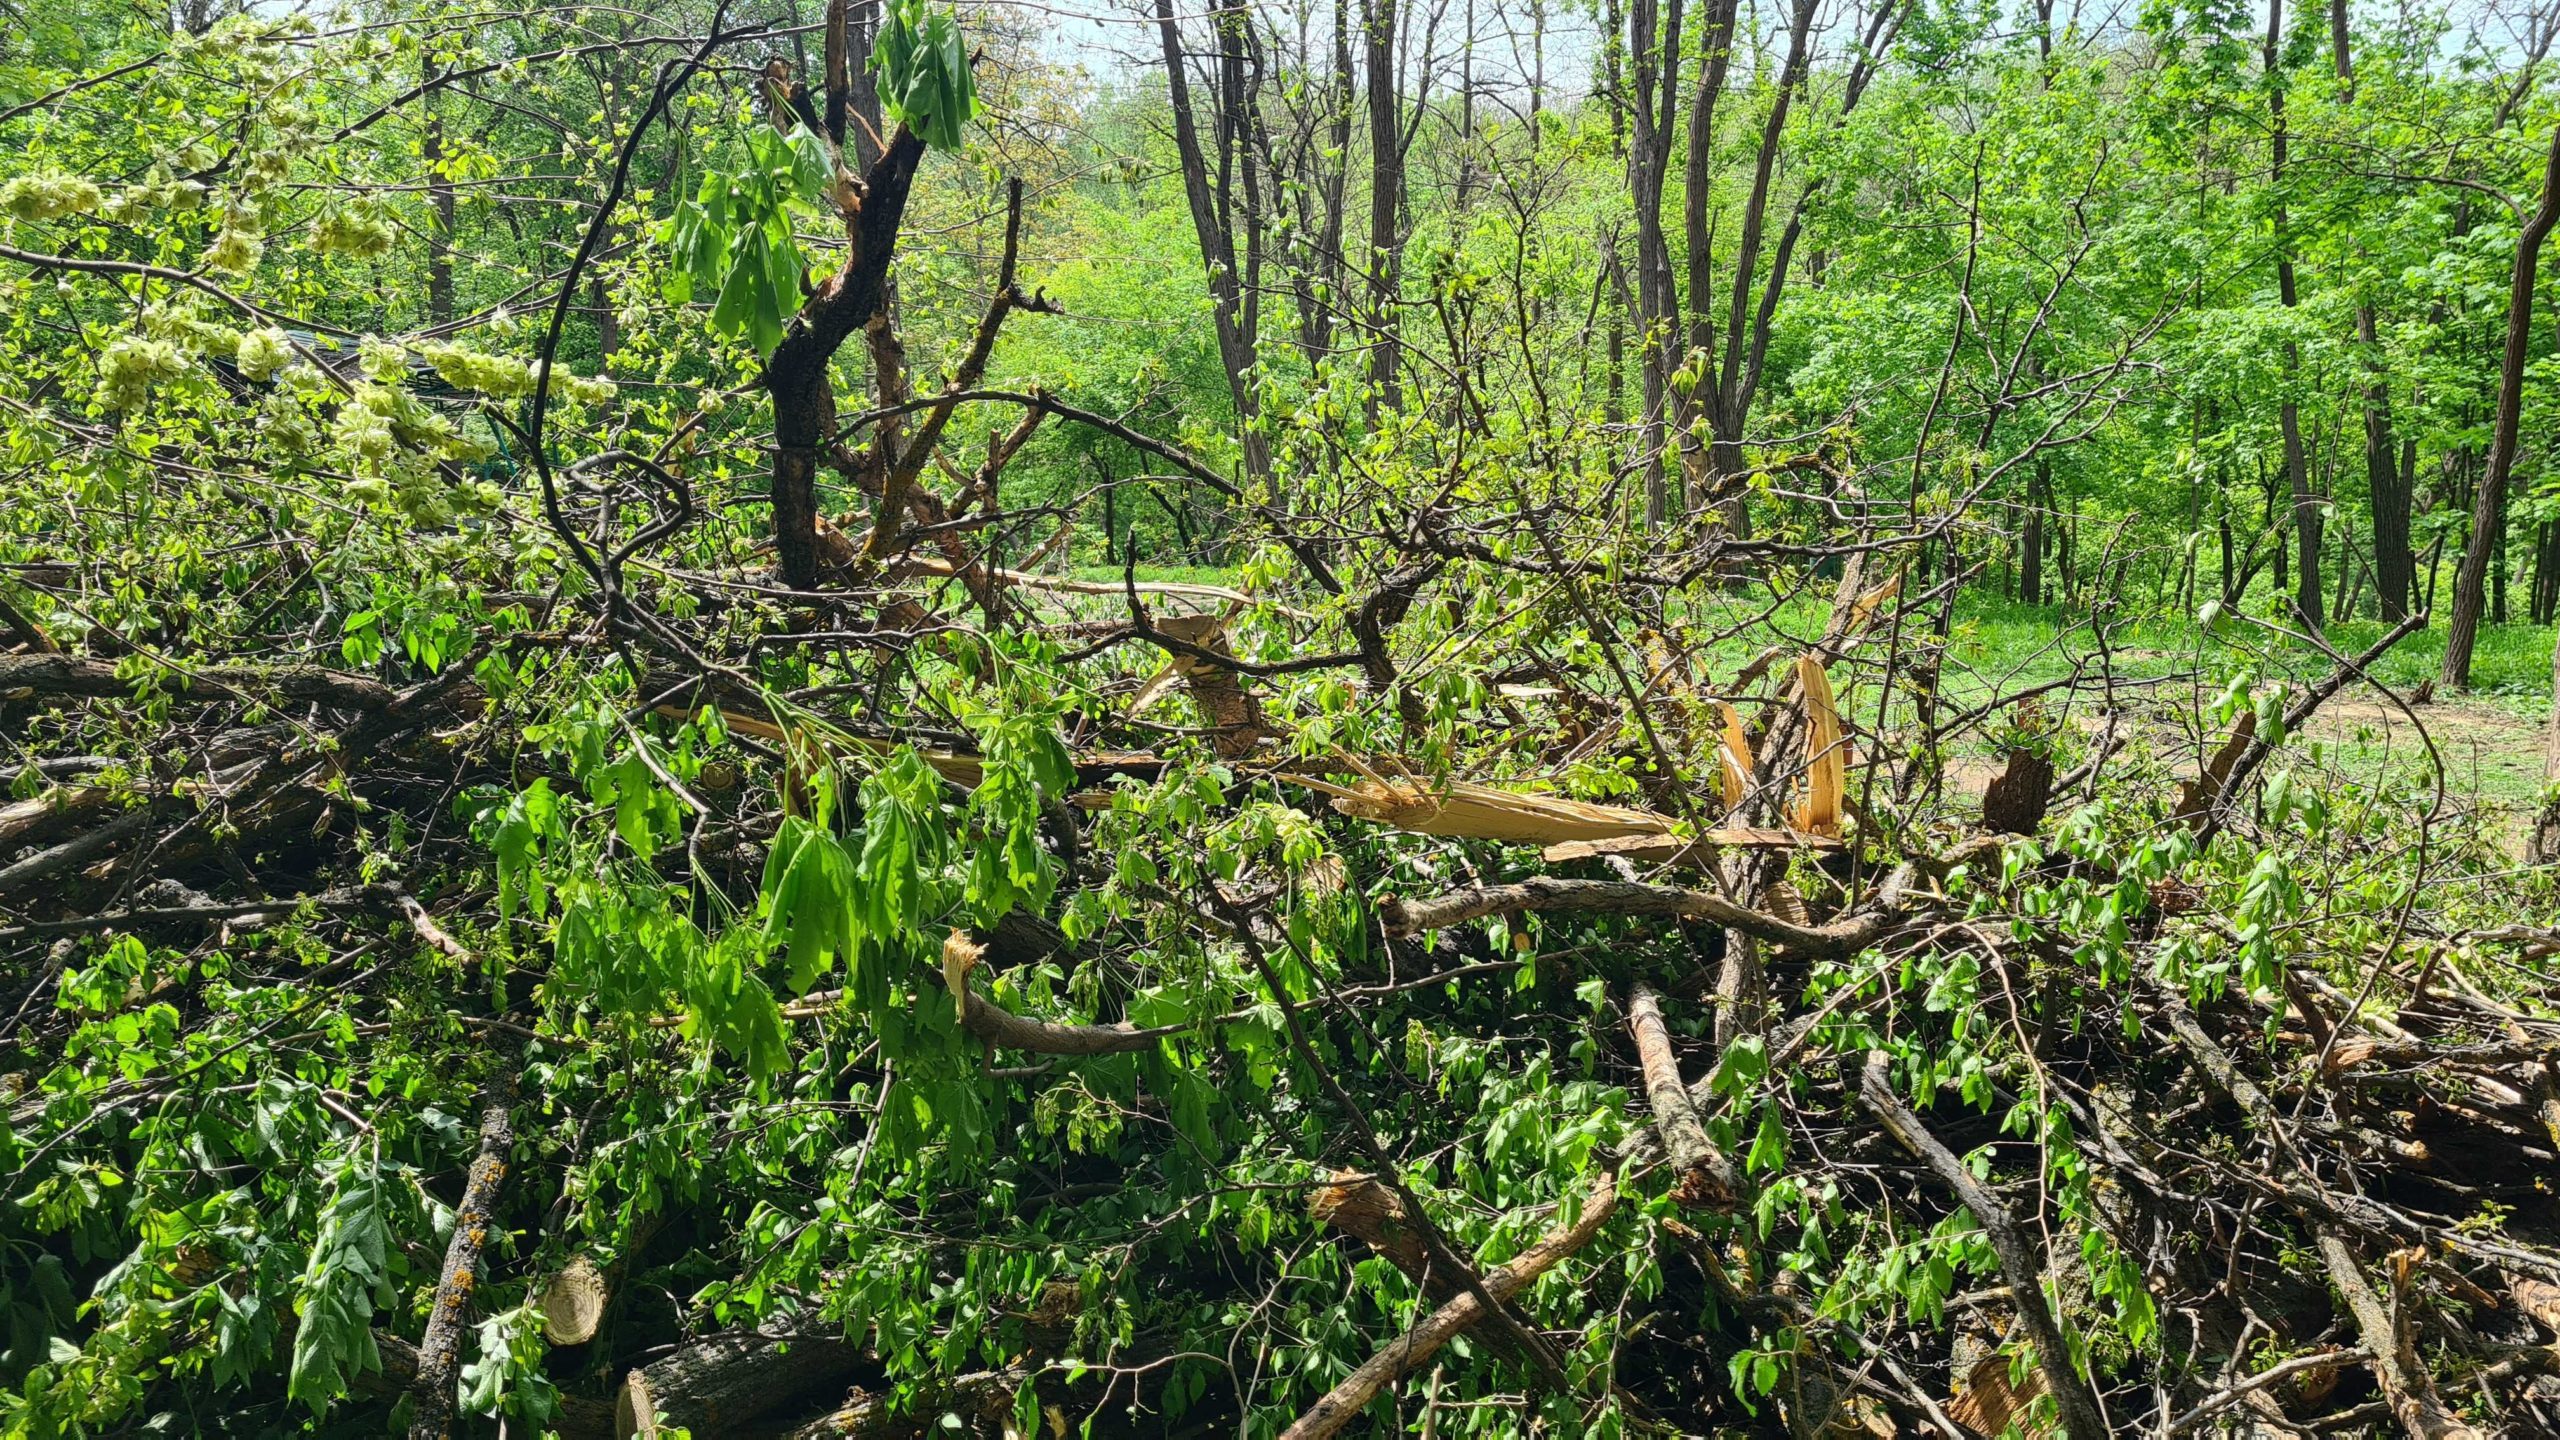 (ФОТО/ВИДЕО) В парке «Валя Морилор» незаконно вырубили 11 деревьев. Кто к этому причастен?